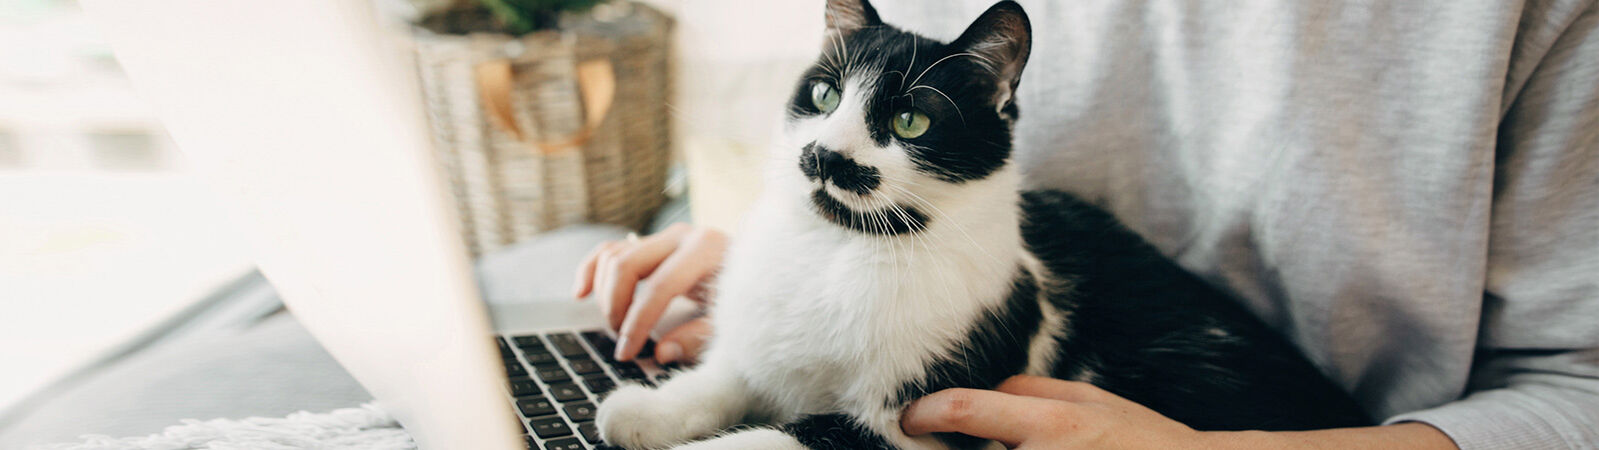 Frau sitzt mit Katze auf dem Schoß vor Laptop.